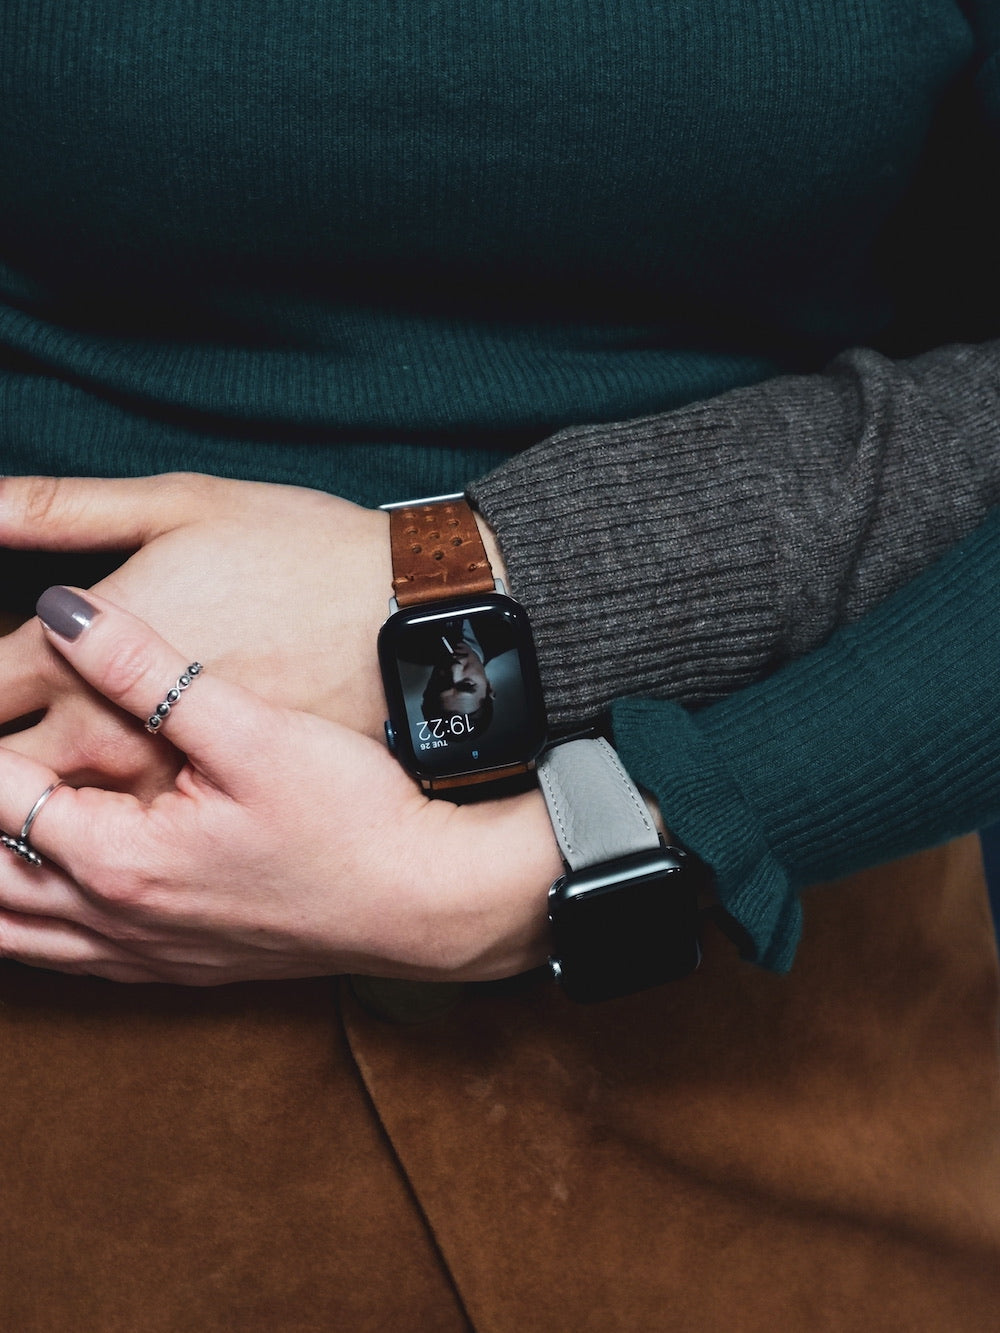 Zweites Lederarmband mit fast 60% Rabatt! WOW!-Apple Watch Armband günstig kaufen